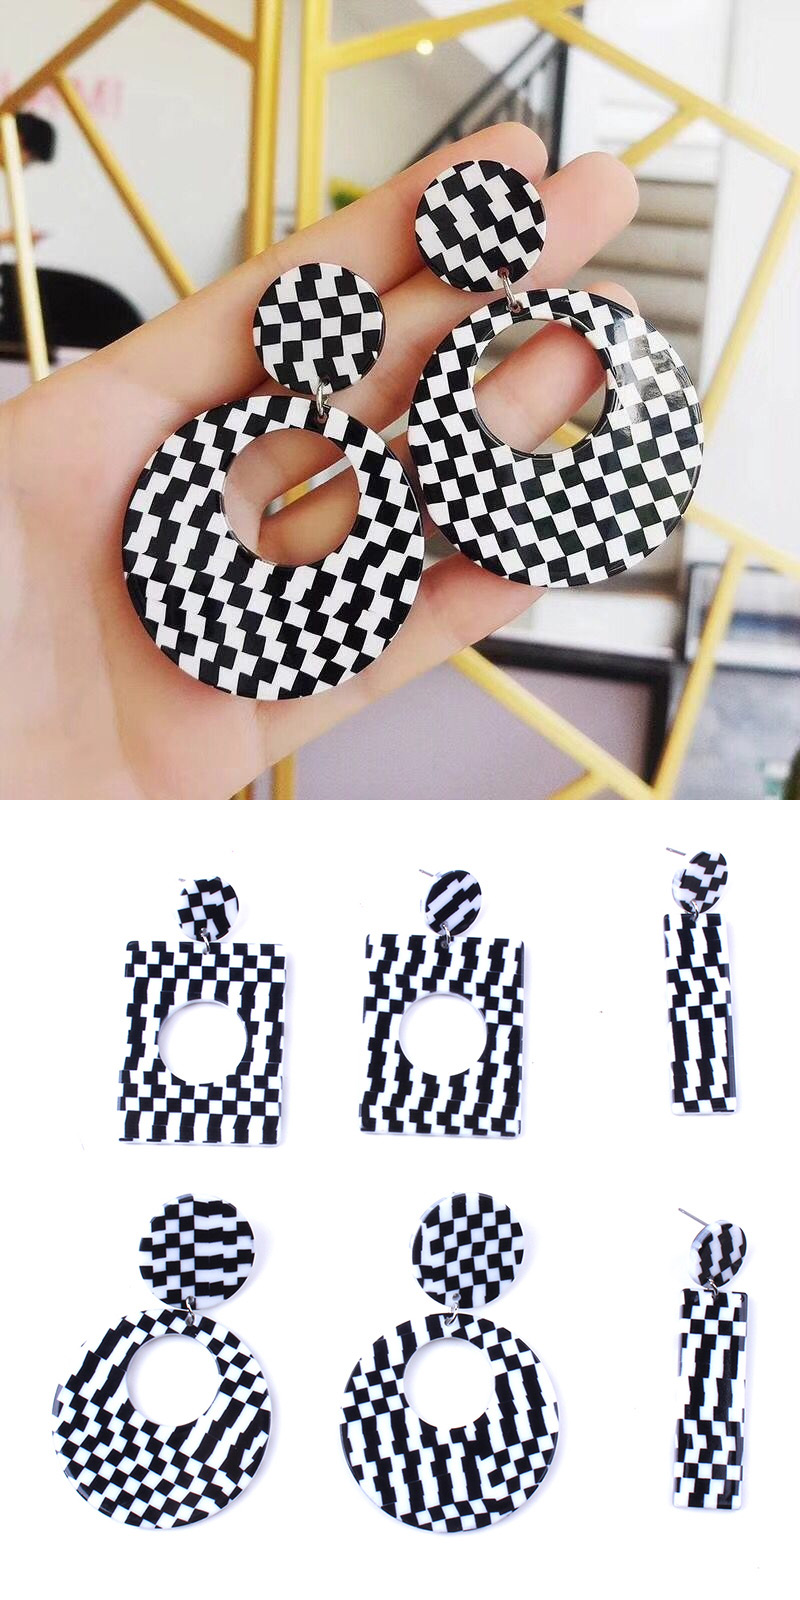 Elegant Black+white Grid Pattern Design Round Shape Earrings,Stud Earrings